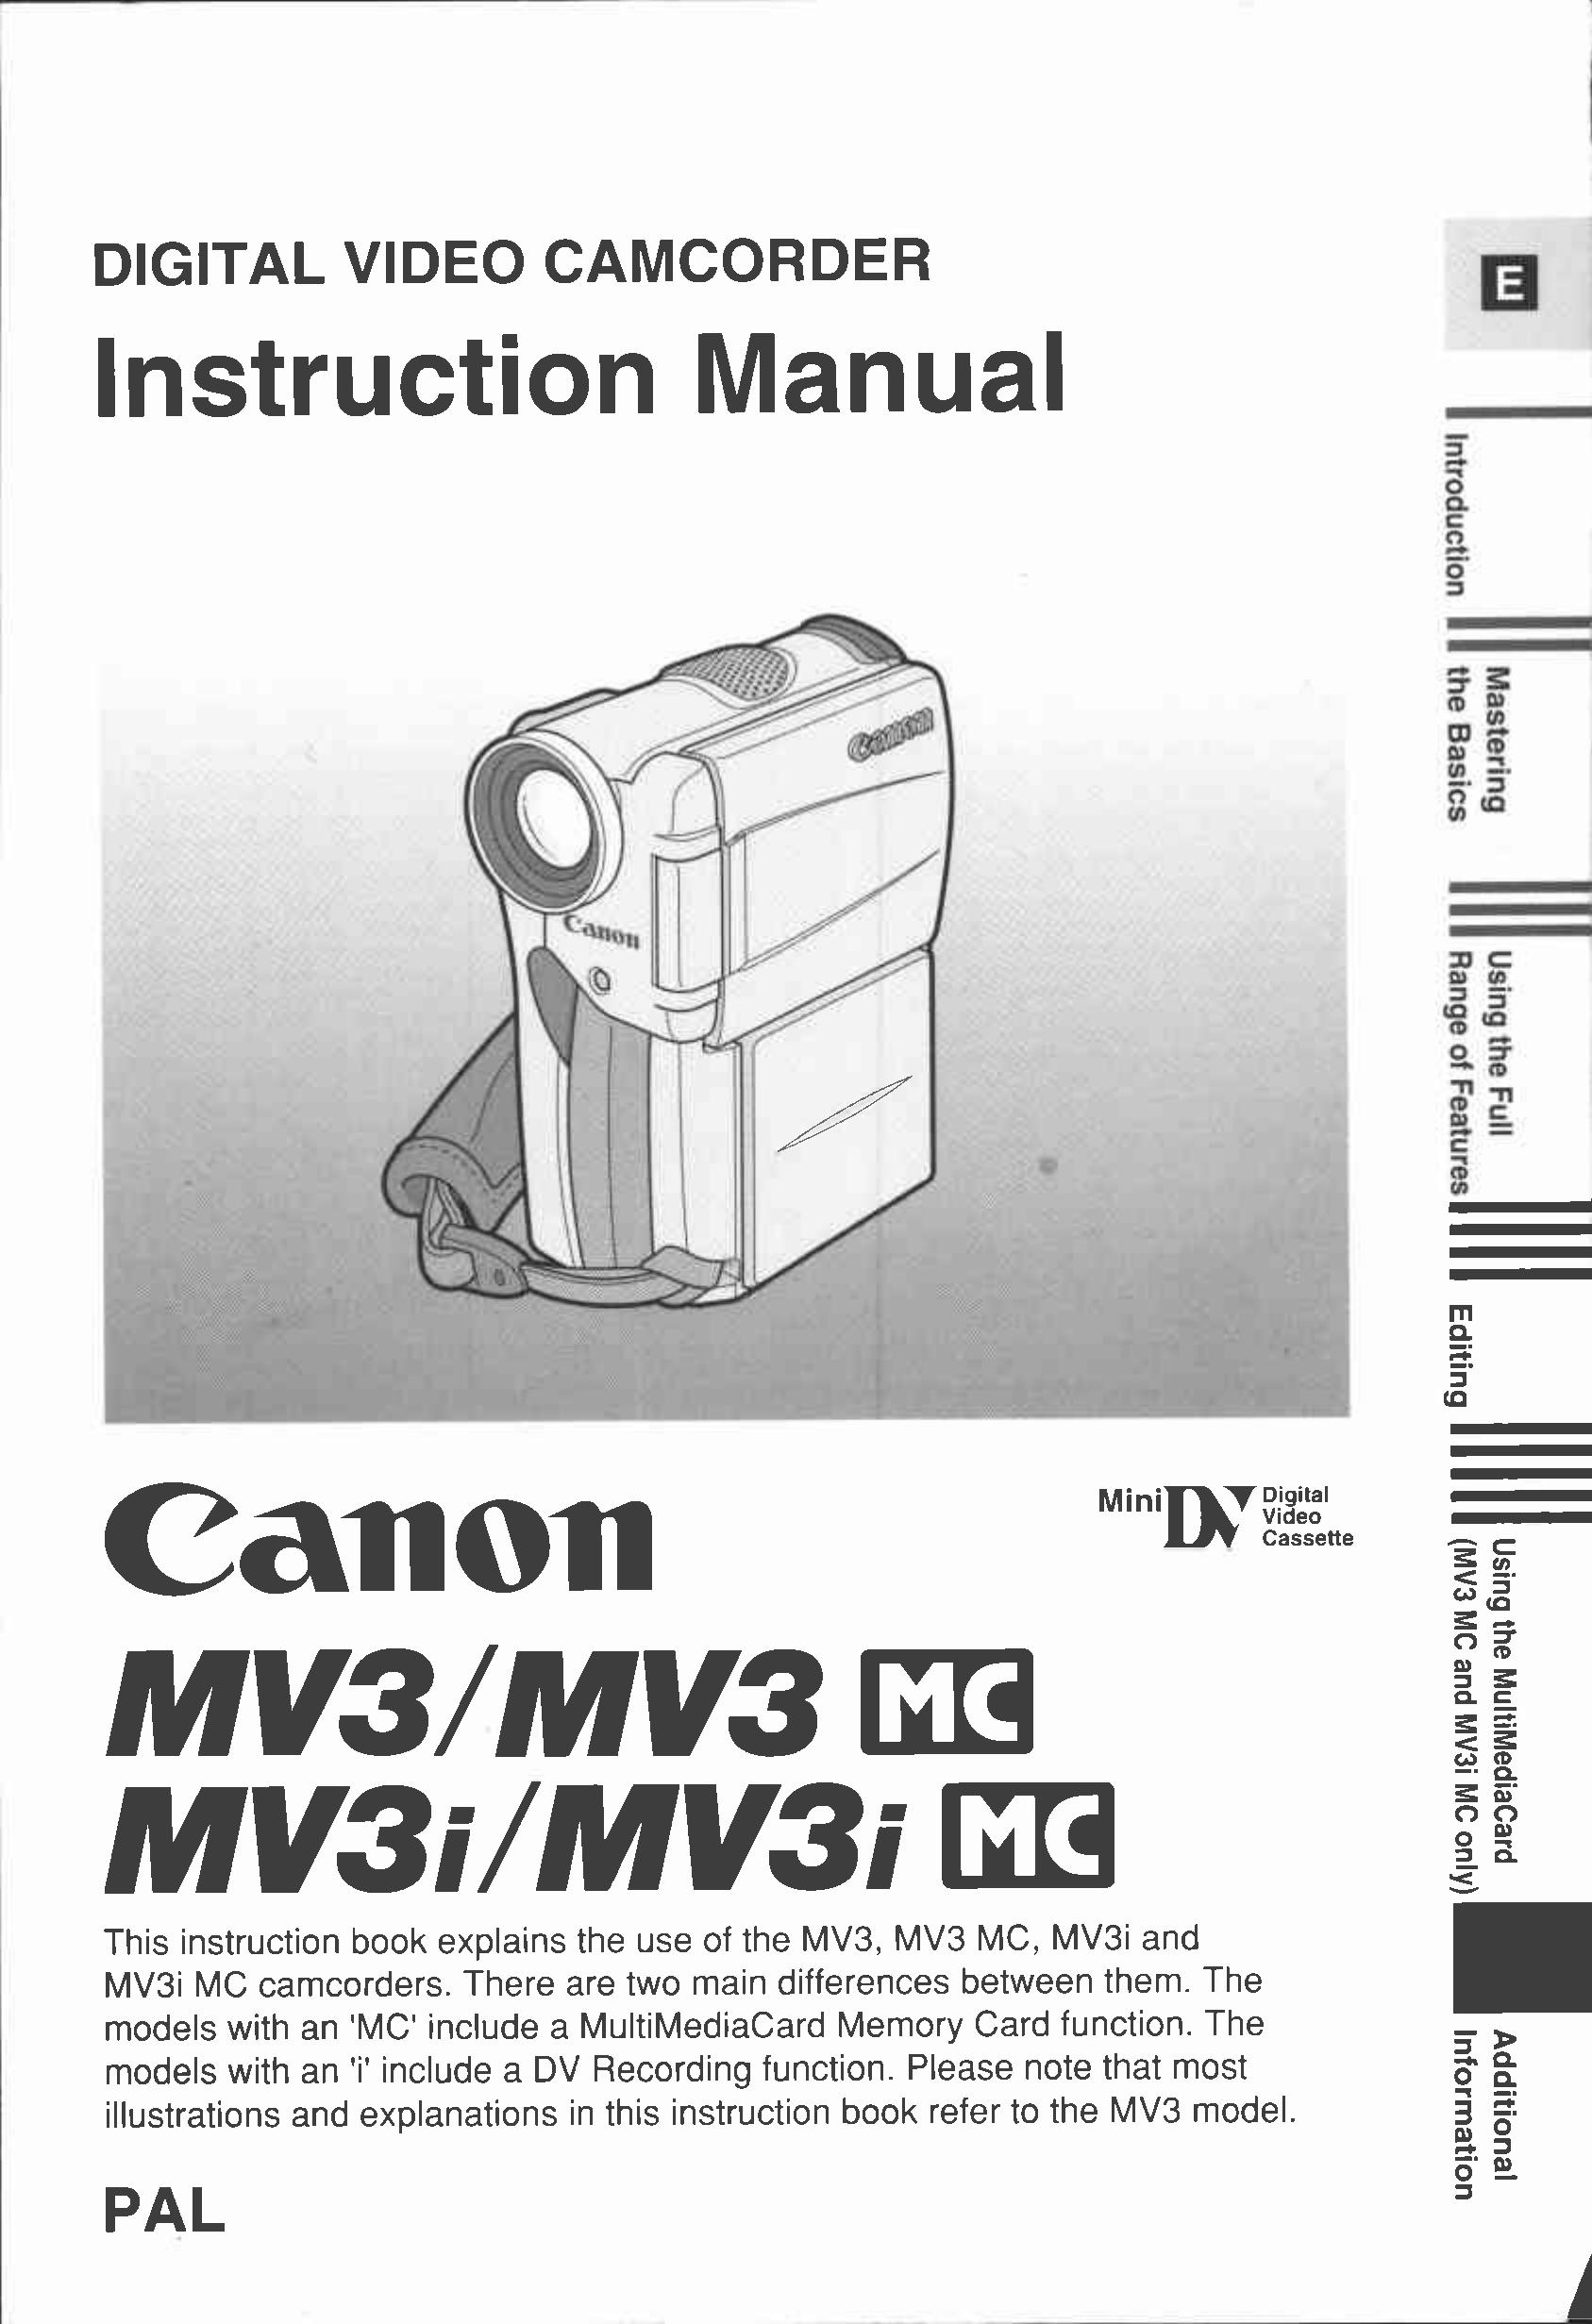 Canon 3 MC Camcorder User Manual